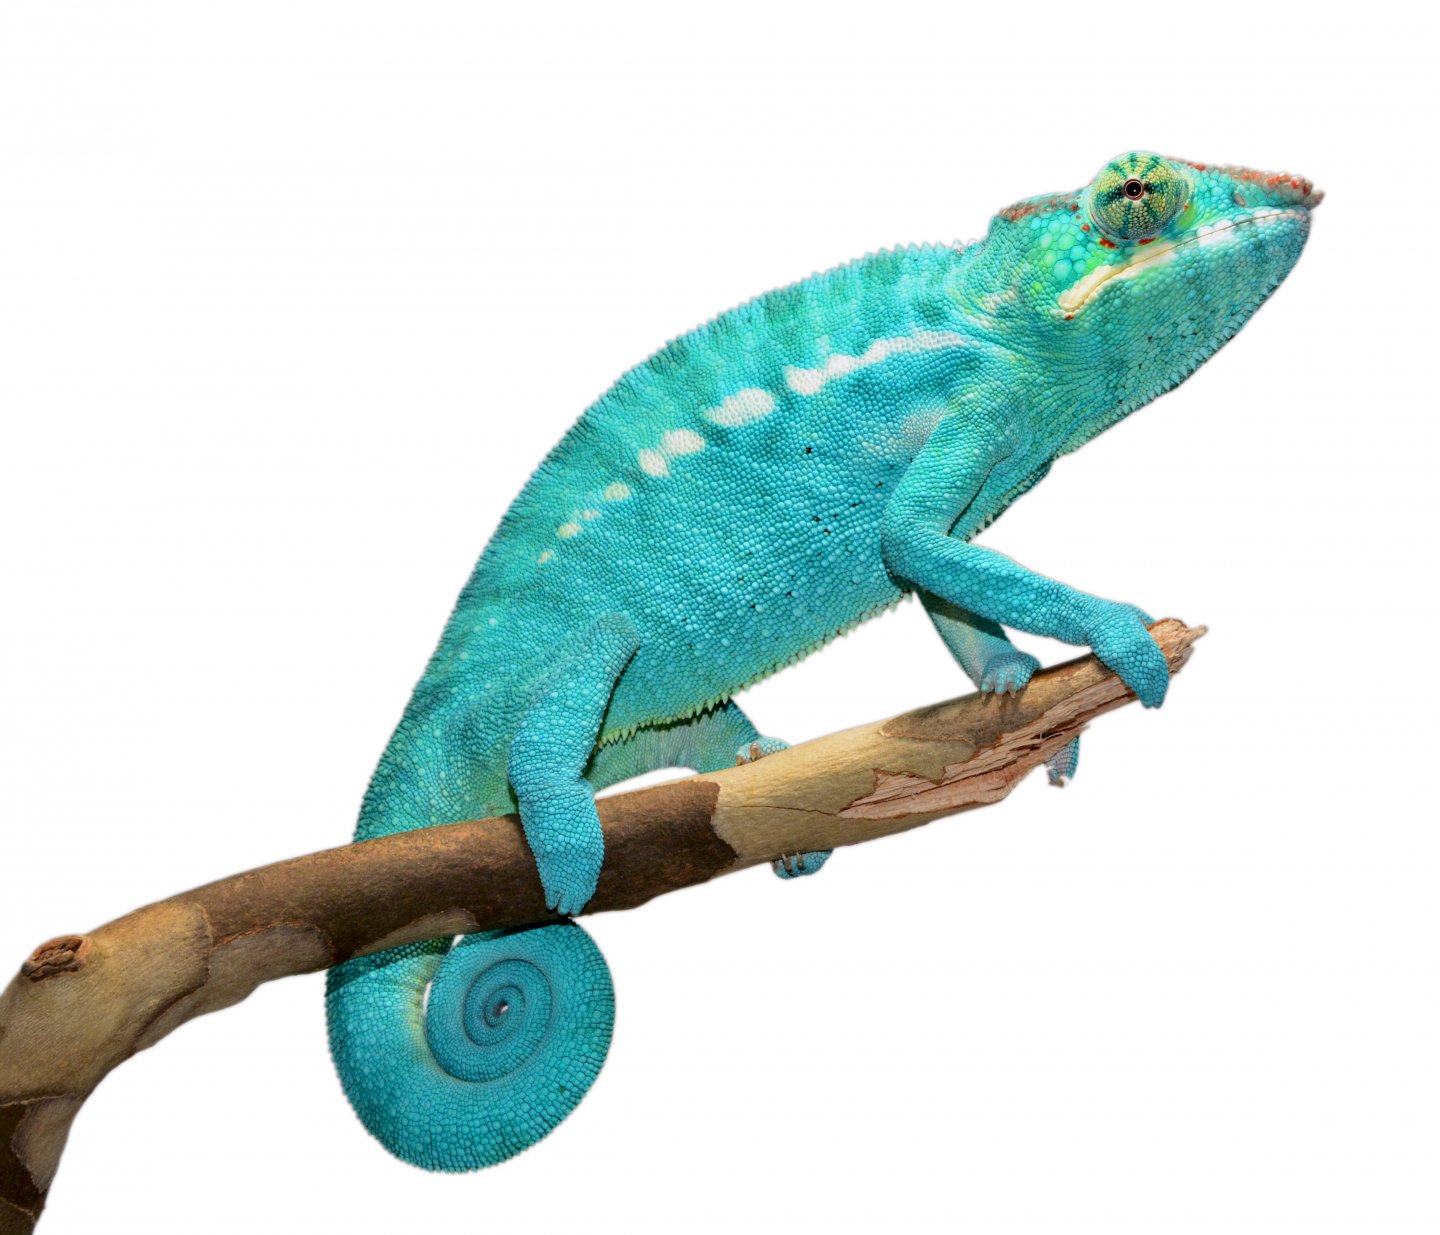 Azul Jr - Nosy Be - Canvas Chameleons (2).jpg